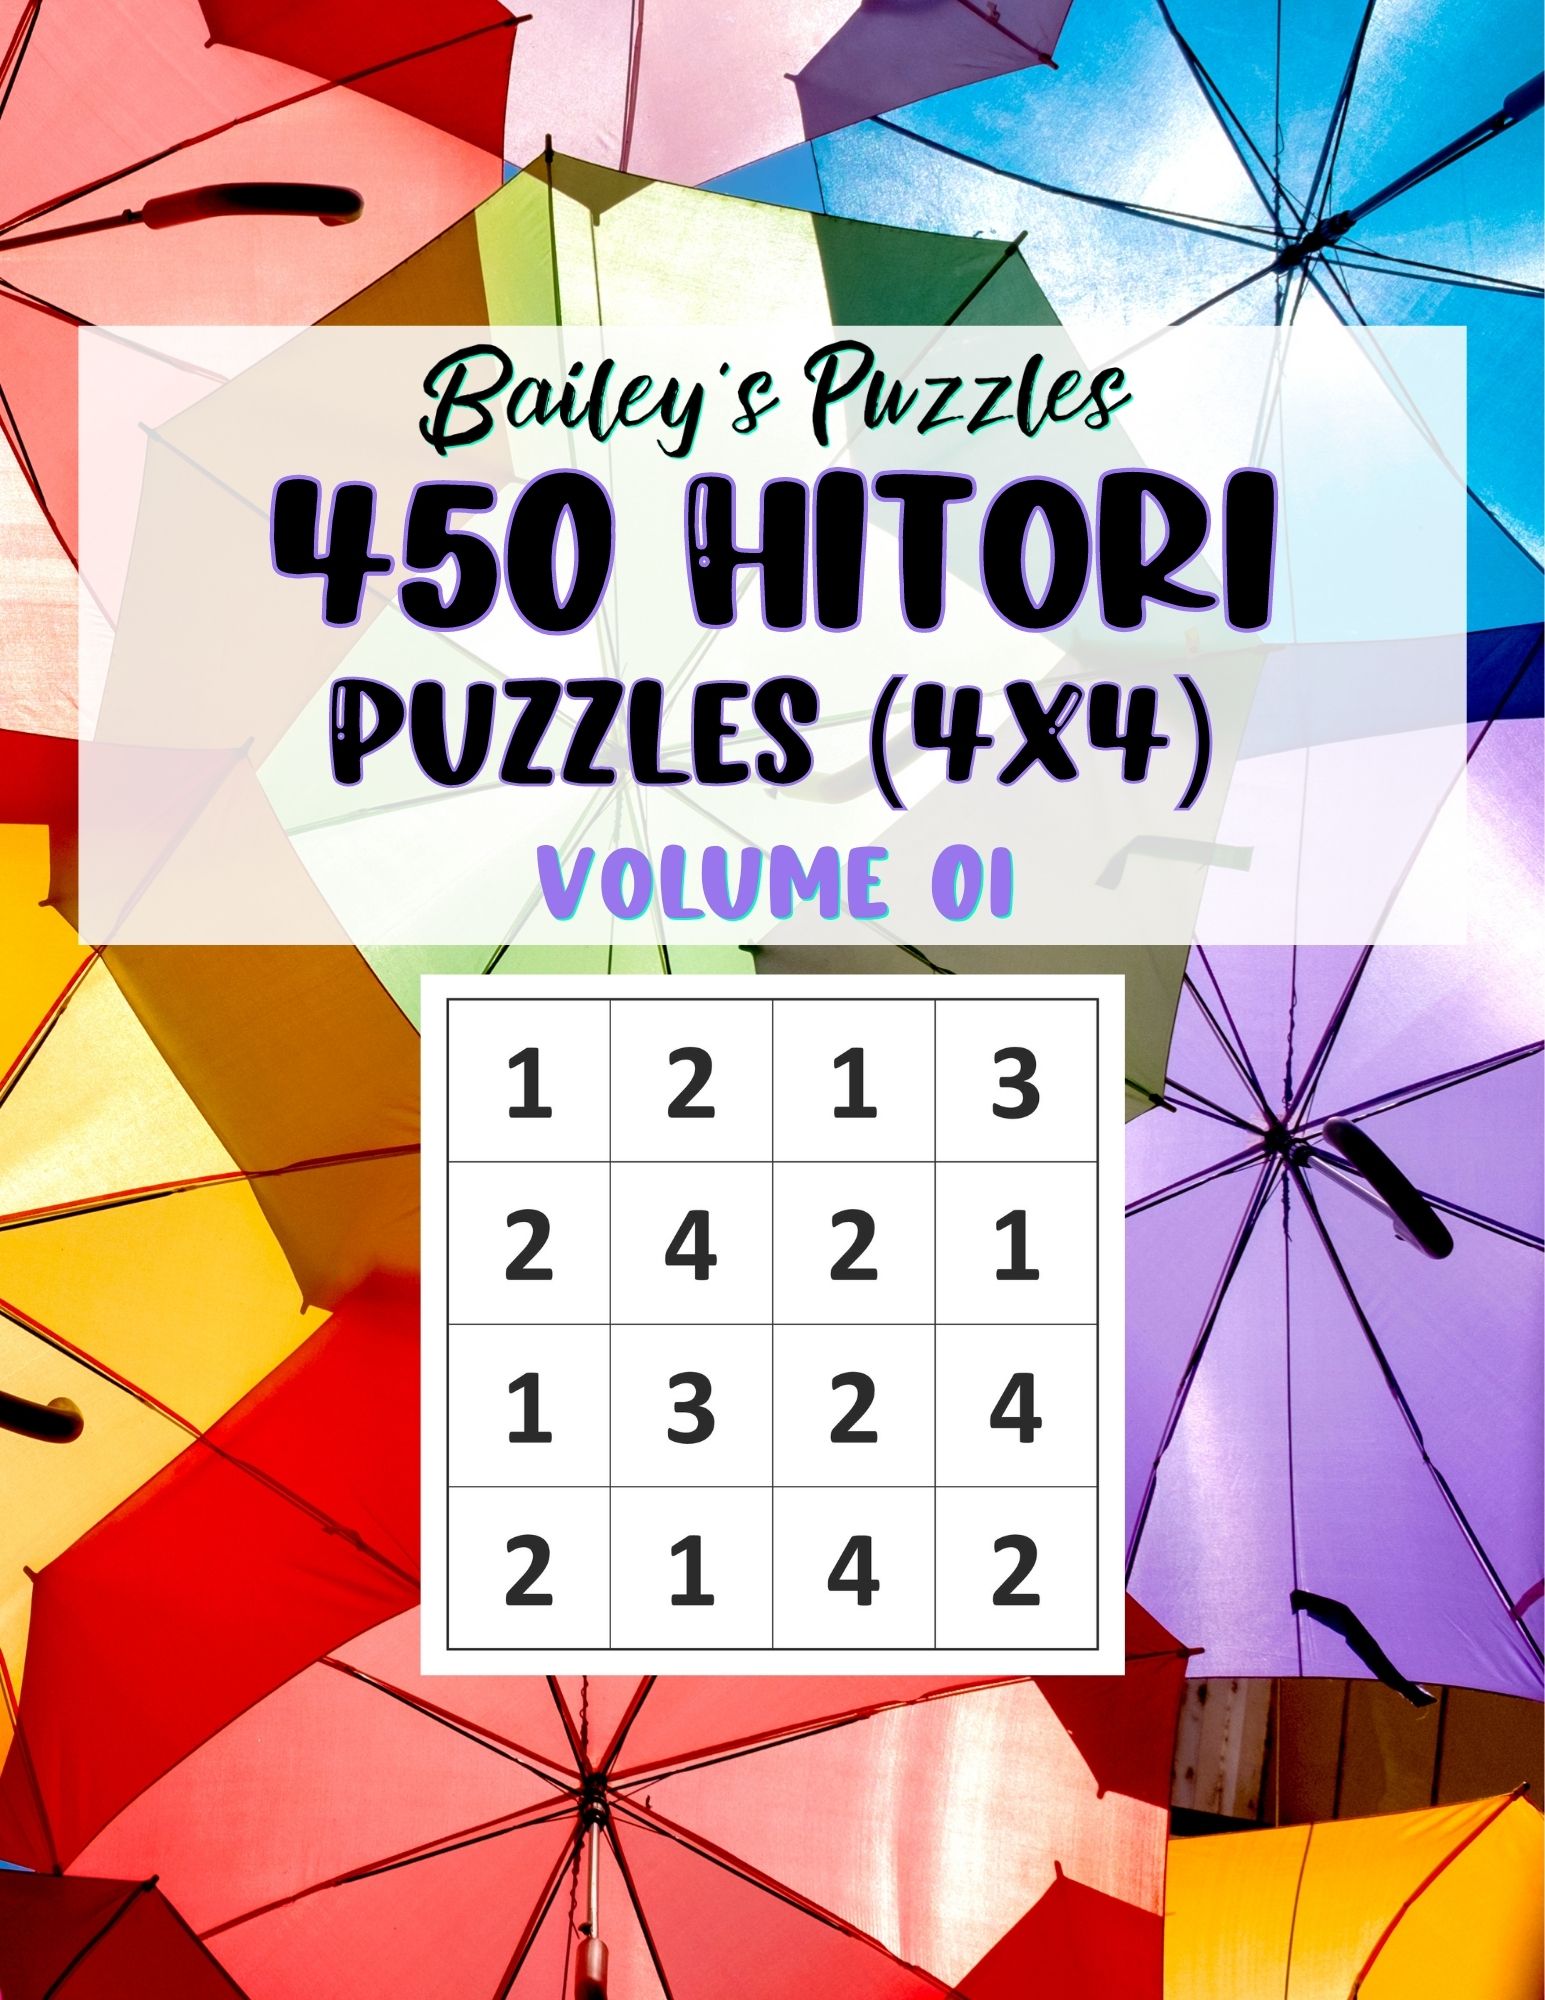 Buy Now: 450 Hitori Puzzles 4x4